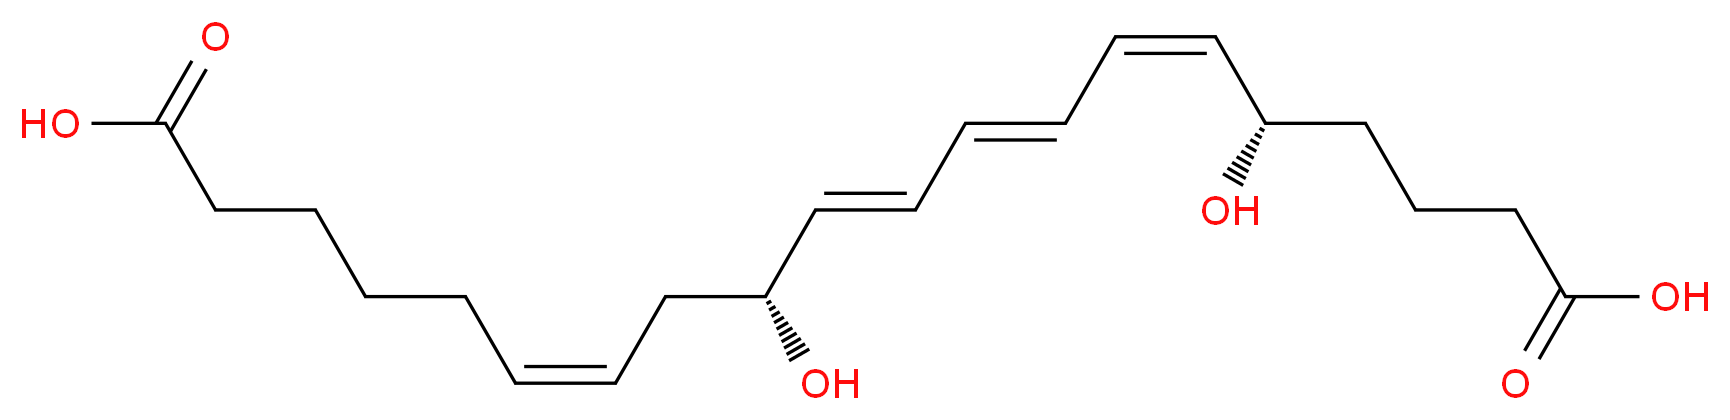 20-Carboxy-leukotriene B4_Molecular_structure_CAS_80434-82-8)